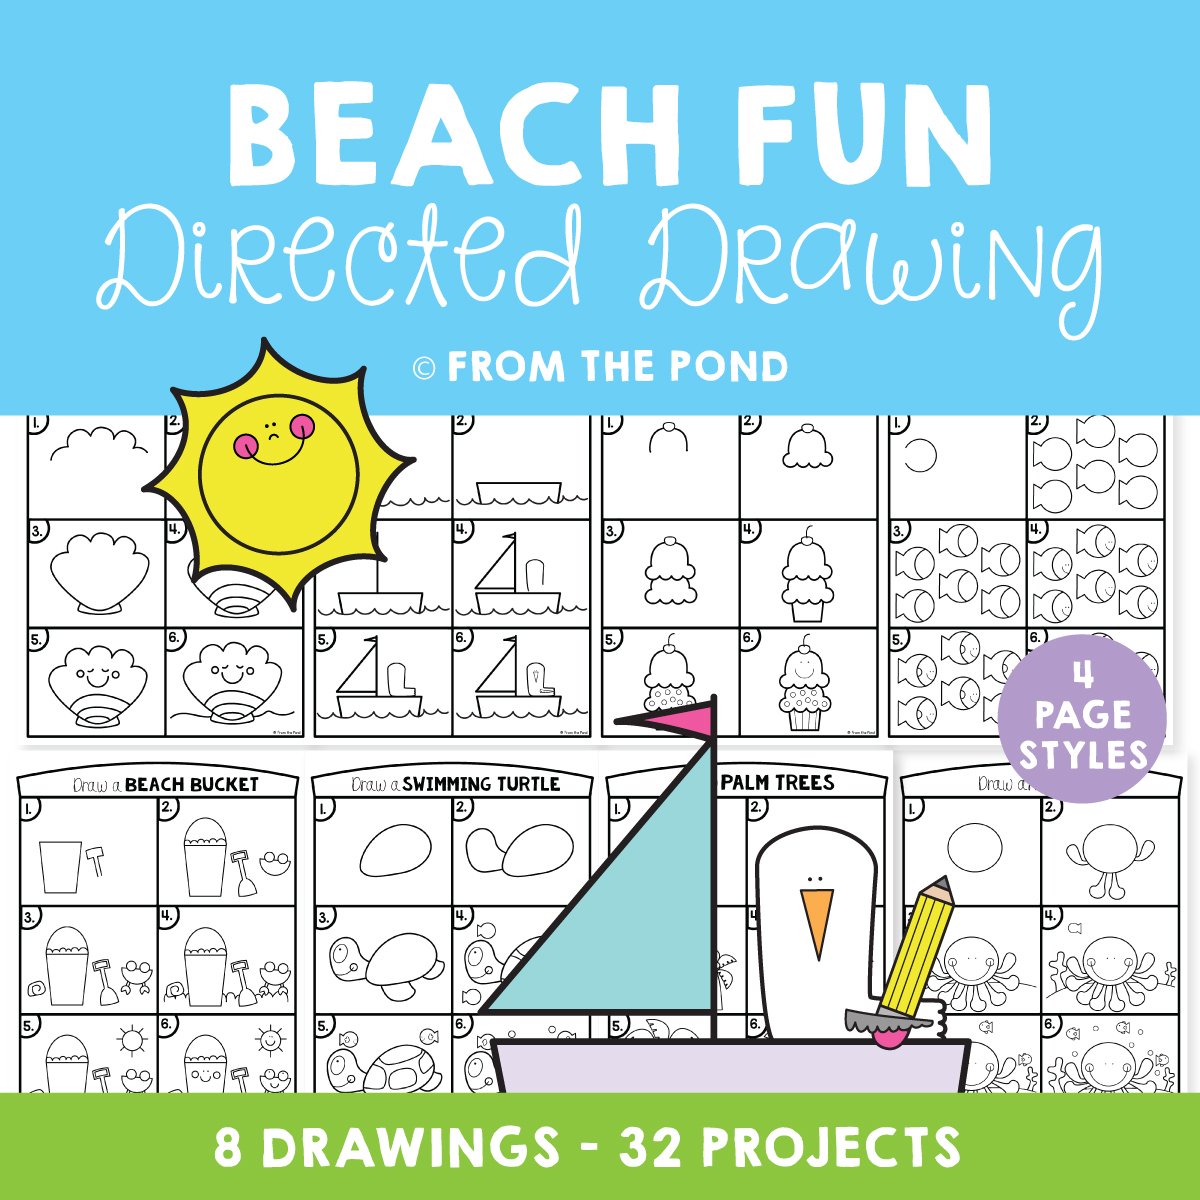 Beach Fun Drawing